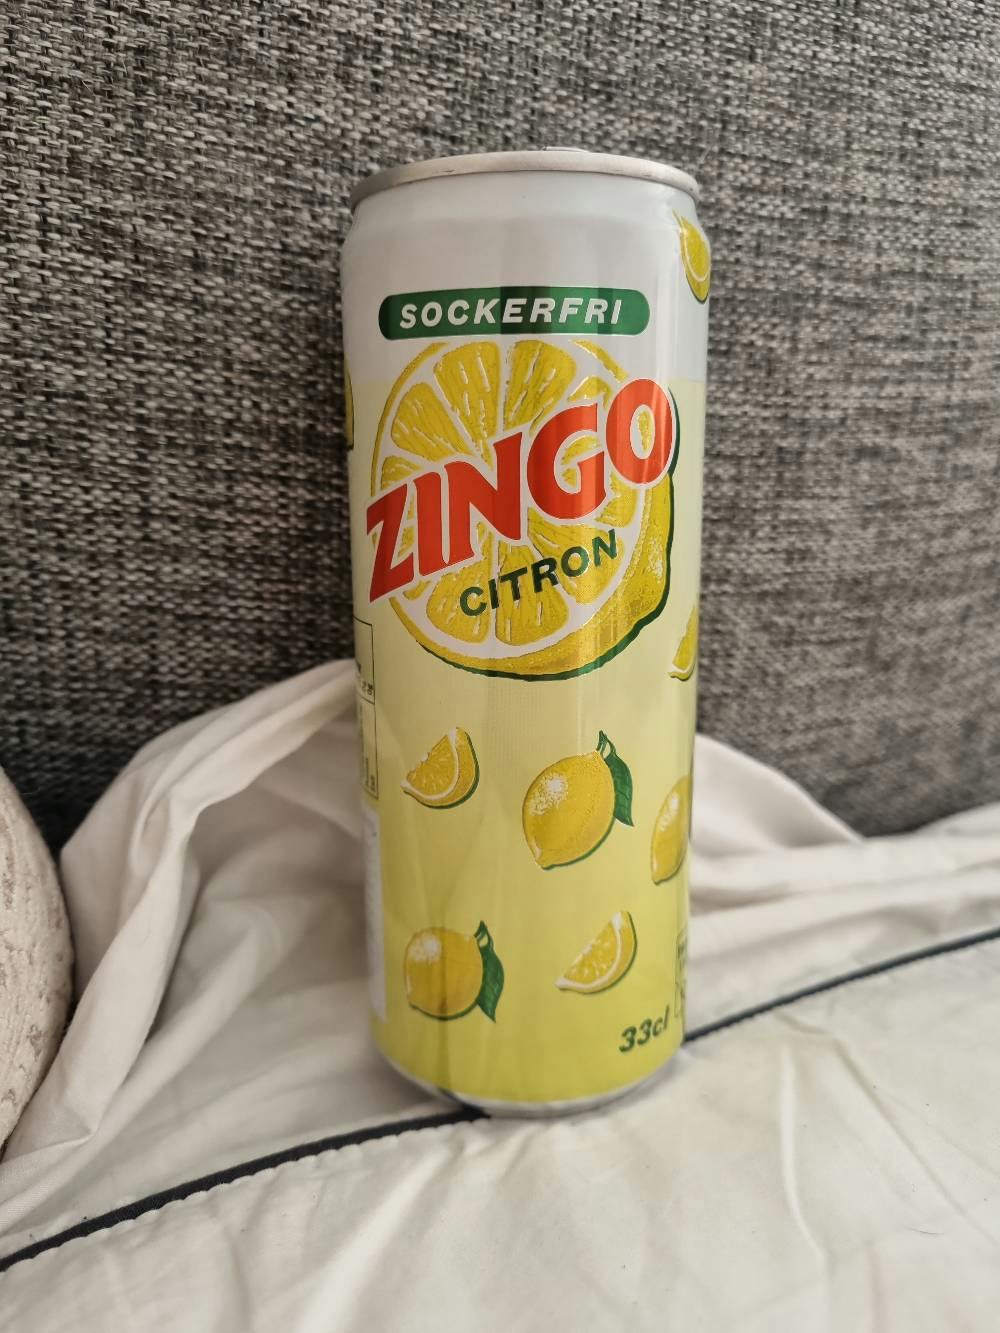 citron, Zingo | Noba